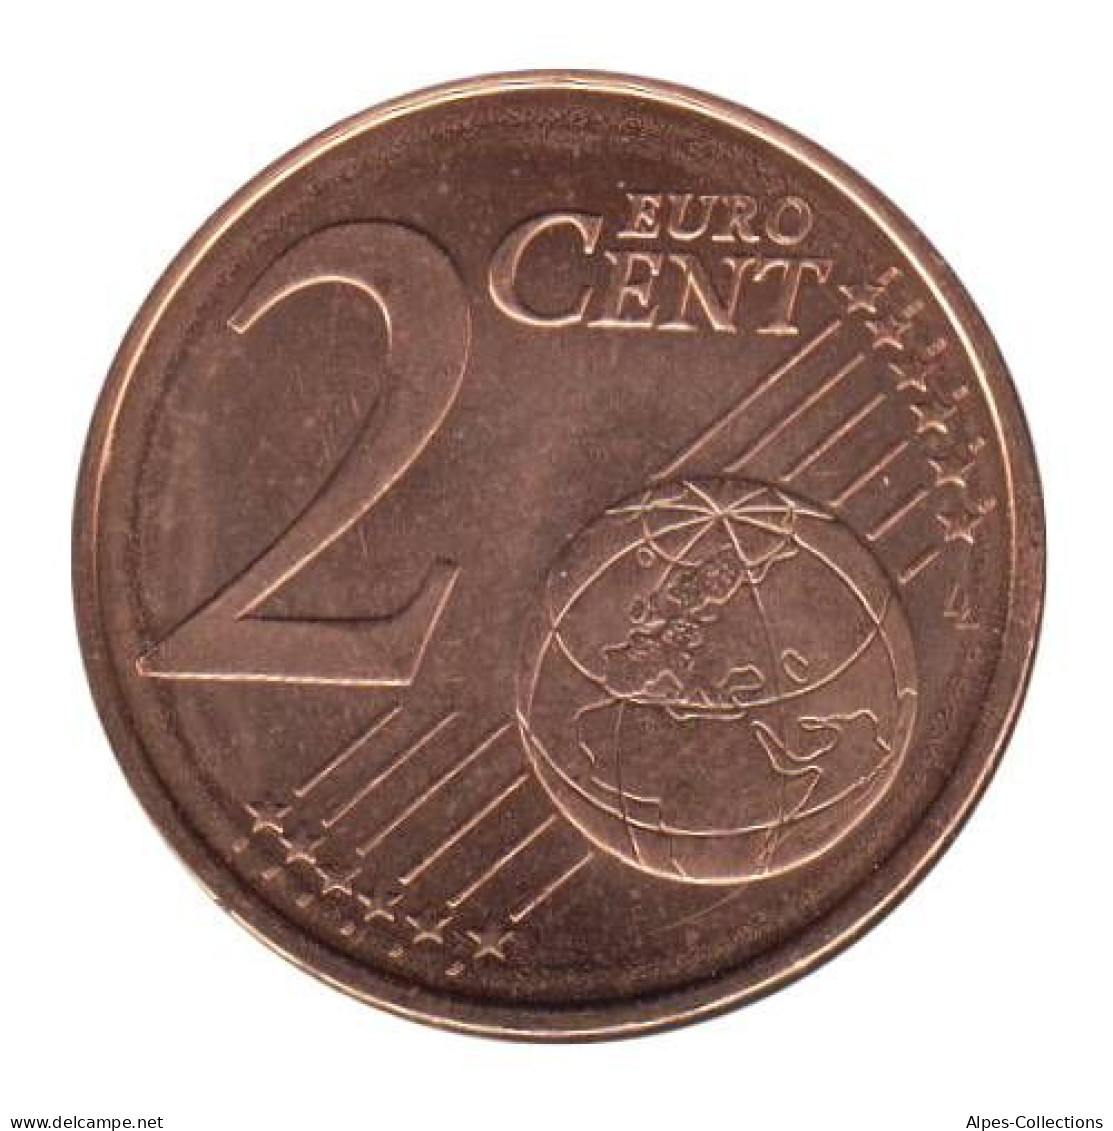 SV00207.1 - SLOVENIE - 2 Cents - 2007 - Slovenia